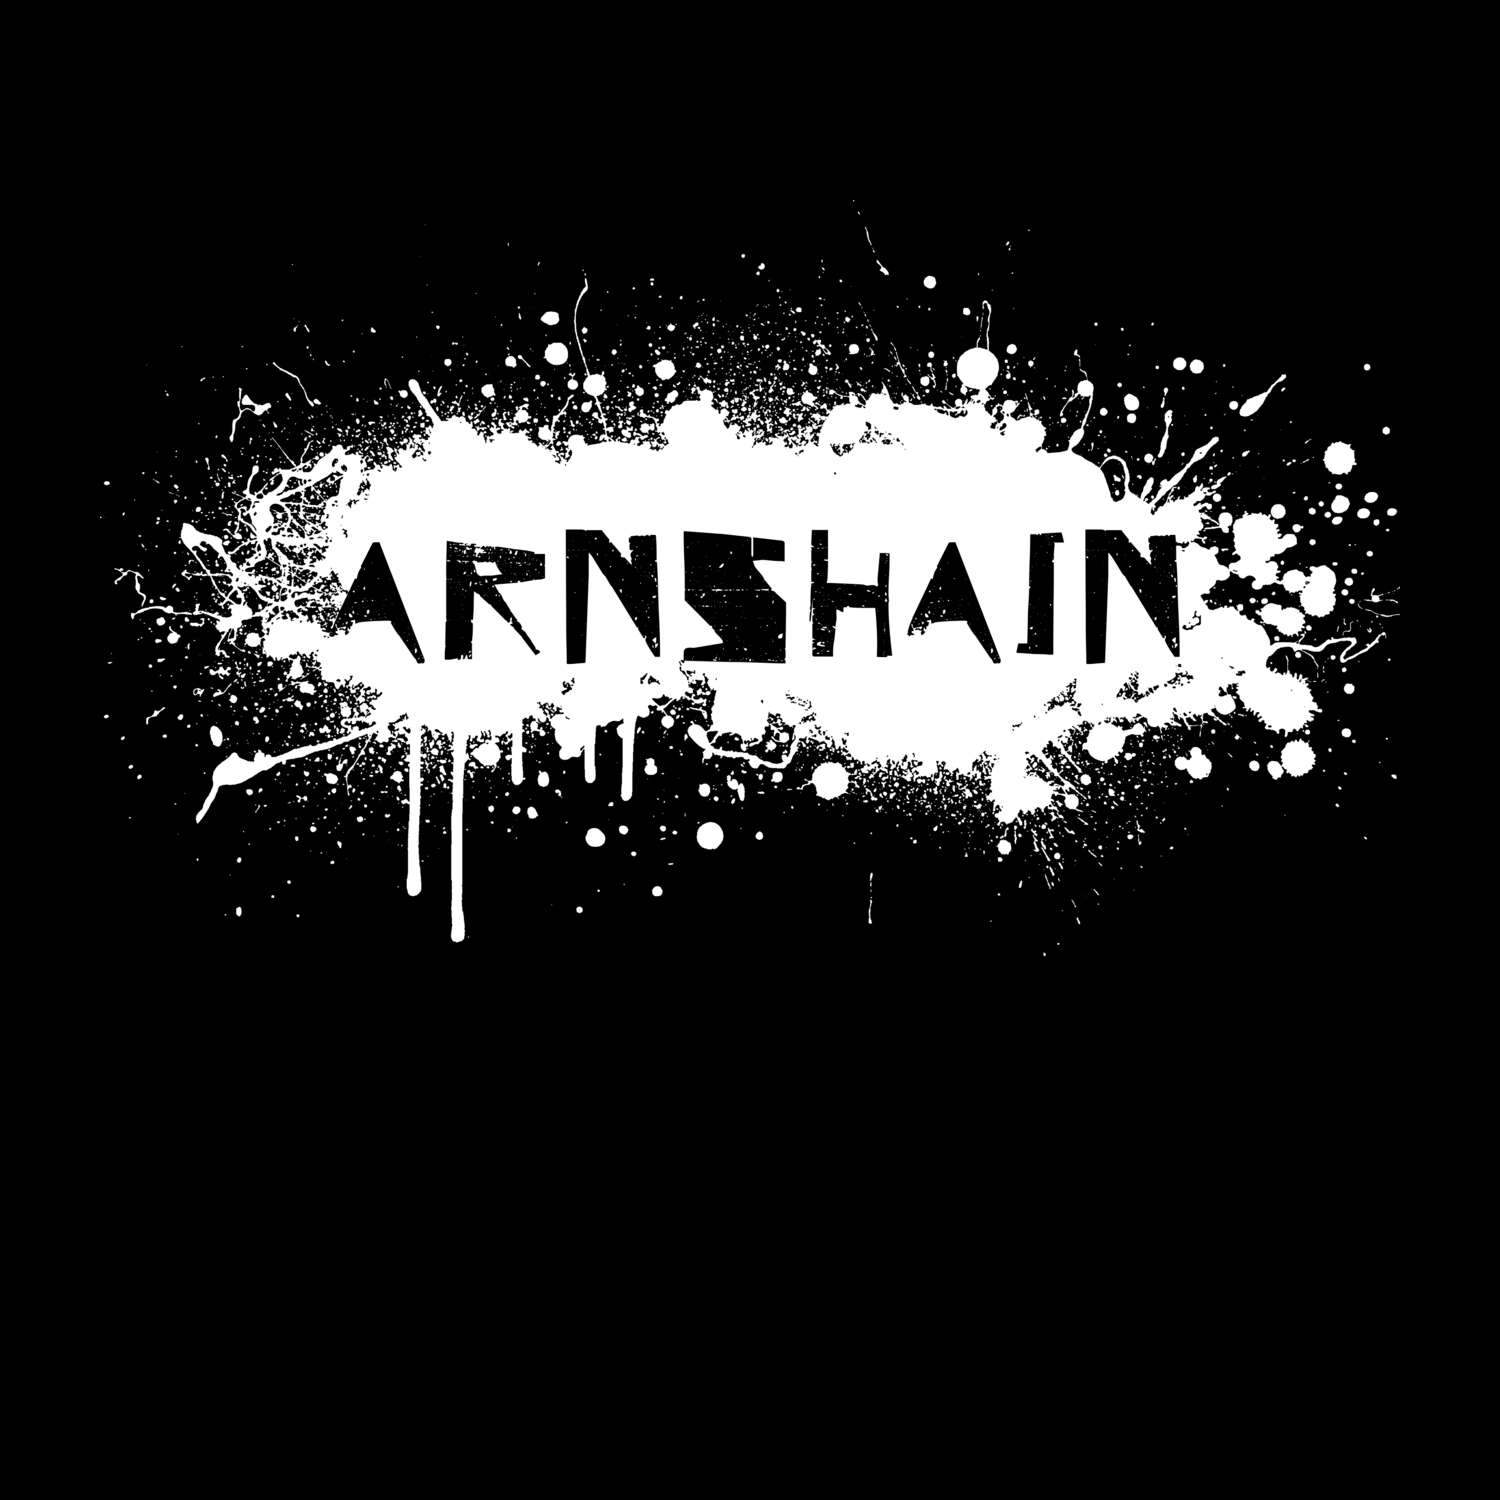 Arnshain T-Shirt »Paint Splash Punk«